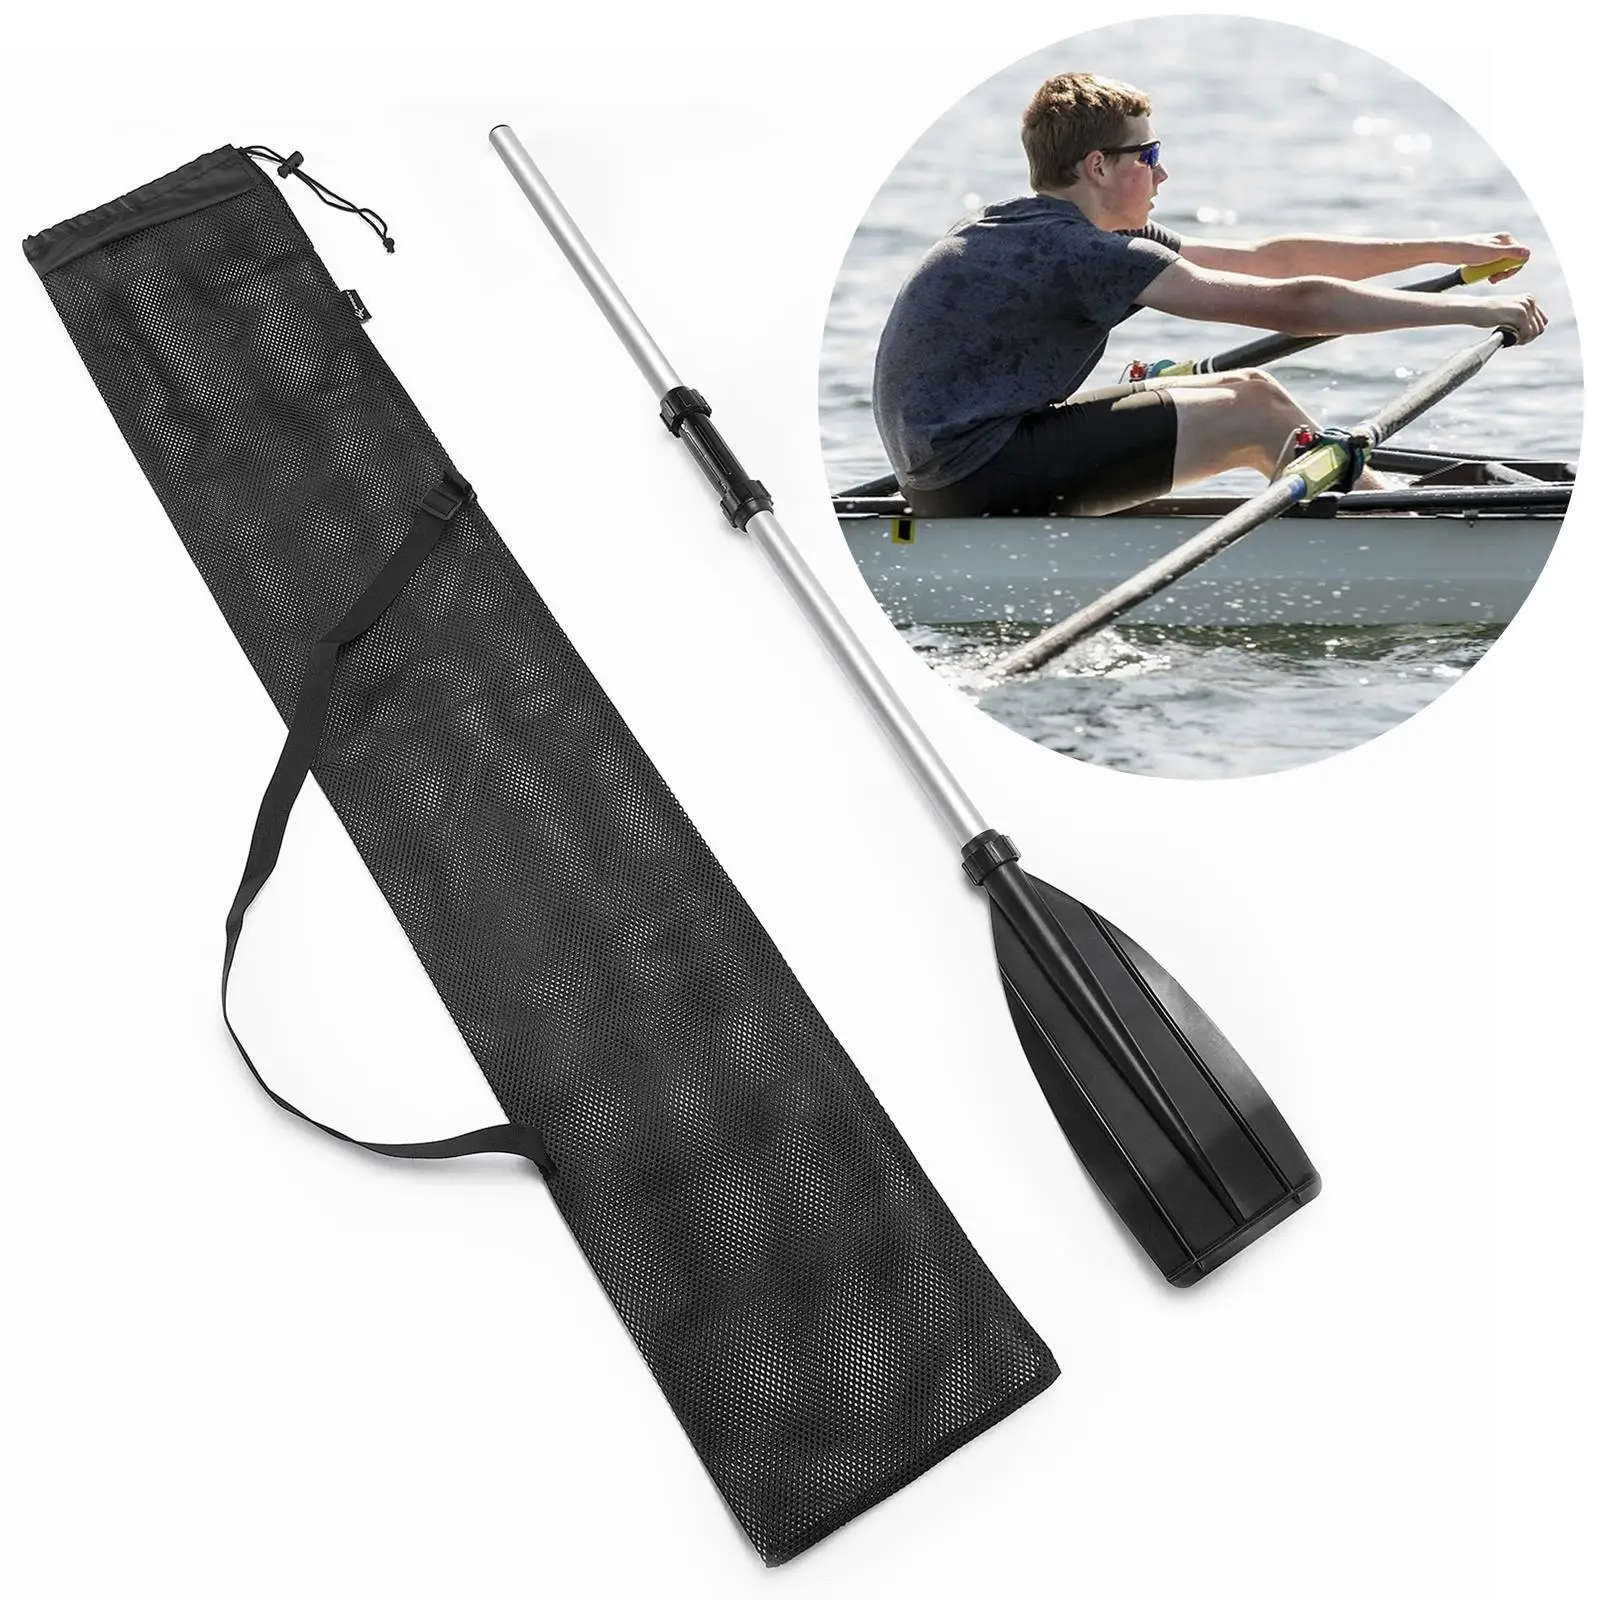 Kayak Paddle Storage Bag Split Shaft Canoe Paddle Holder Pouch Case Protector Carrying Bag Adjustable Shoulder Strap Accessories